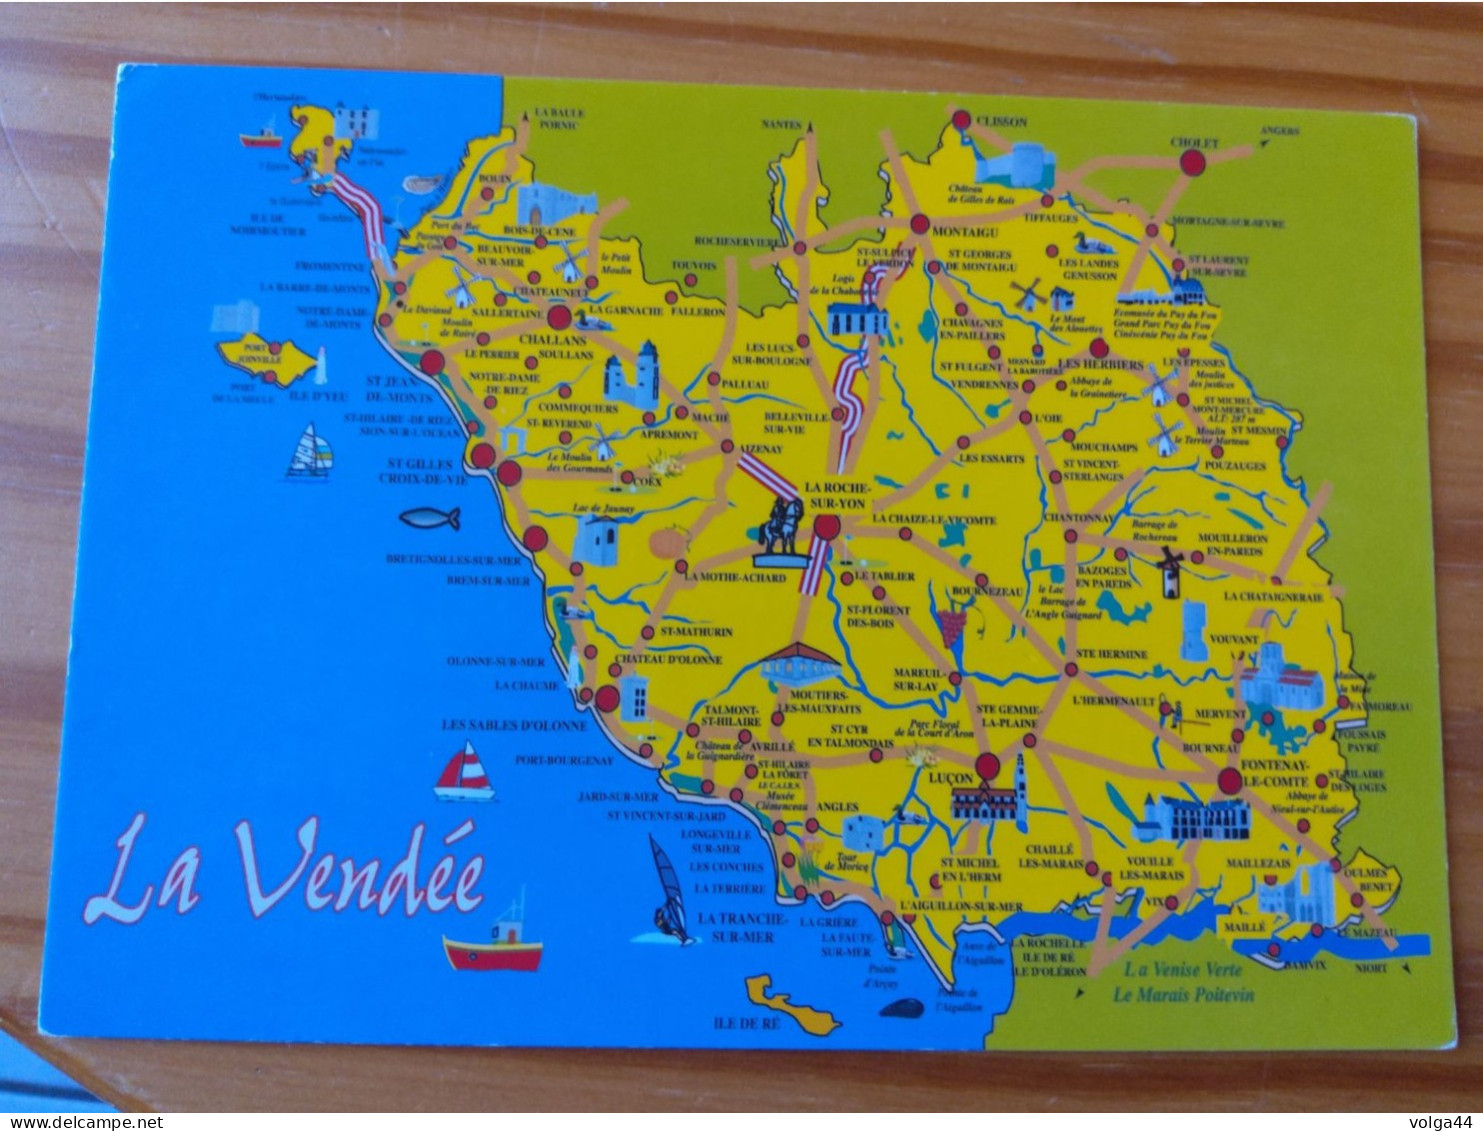 85 -LA VENDEE -  Carte Géographique- Contour Du Departement - Landkarten